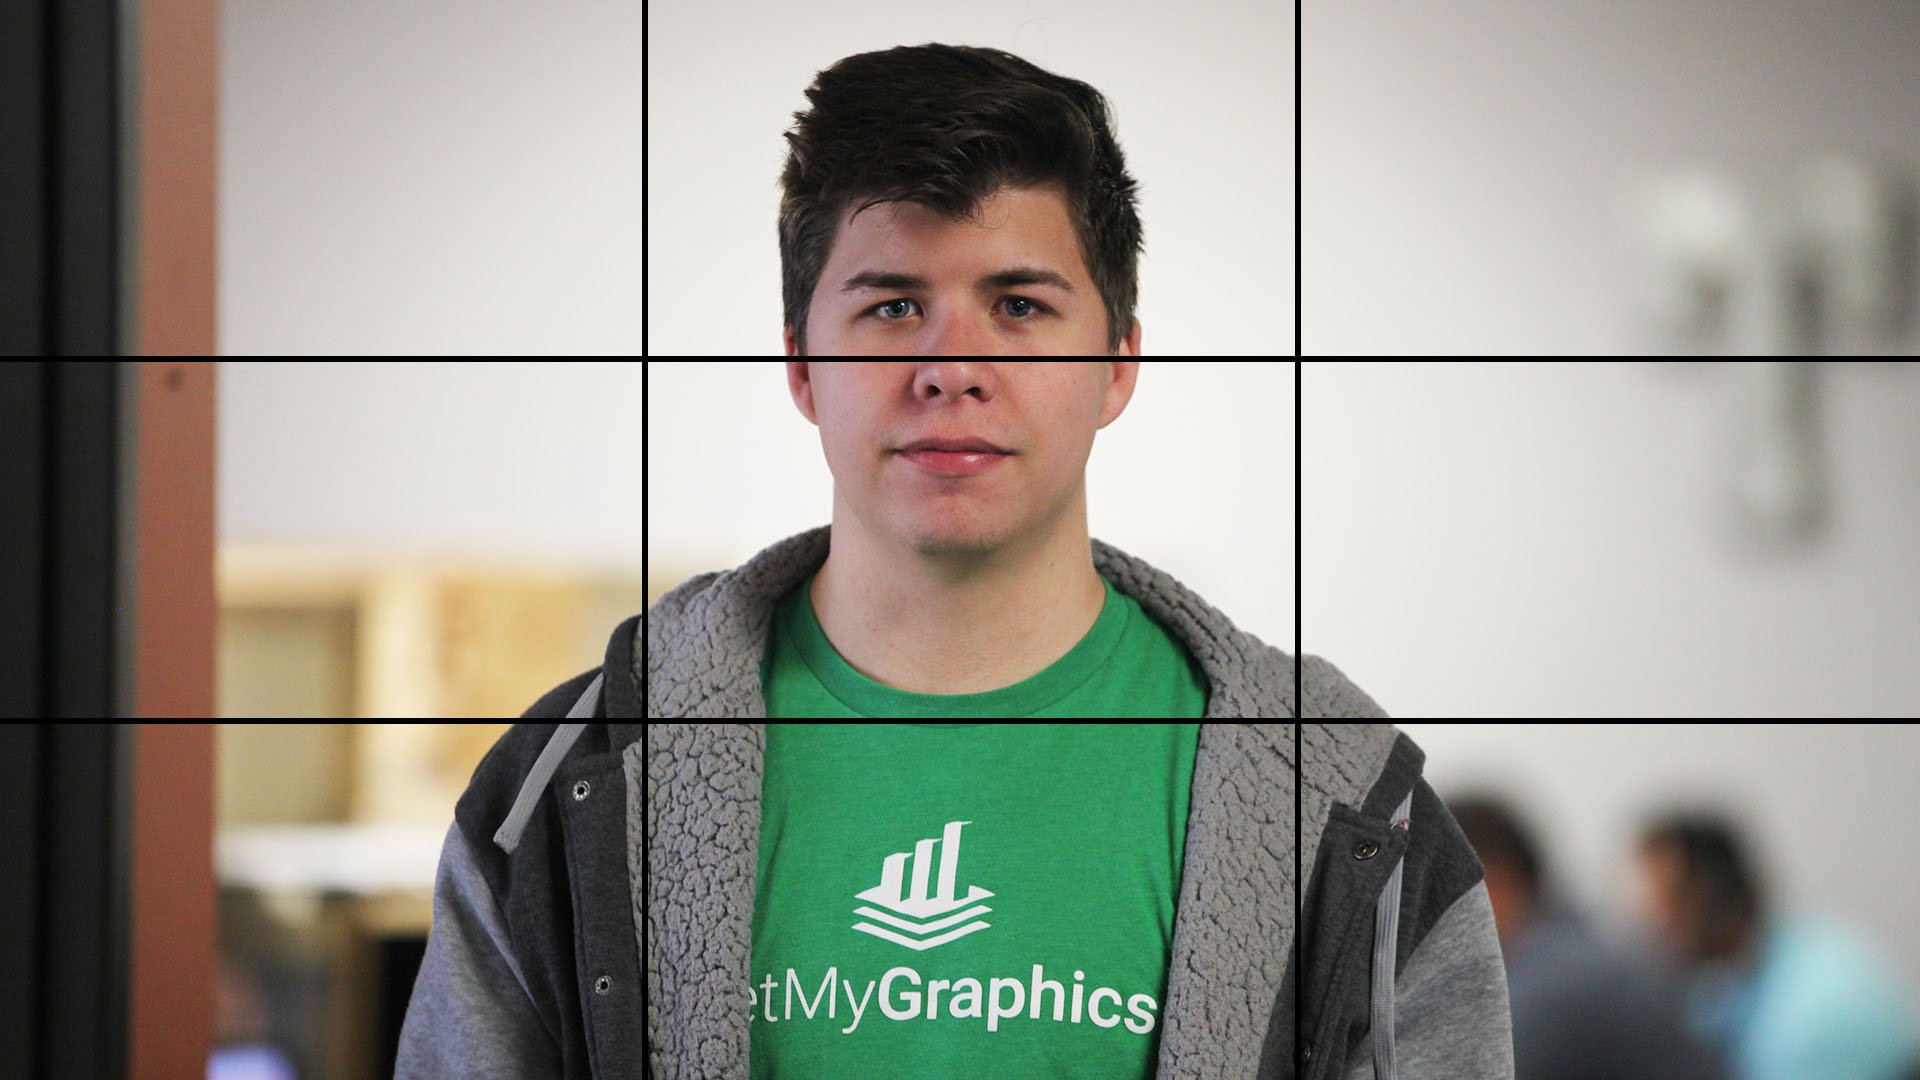 video framing rule of thirds cross hairs- eyeline on top grid line